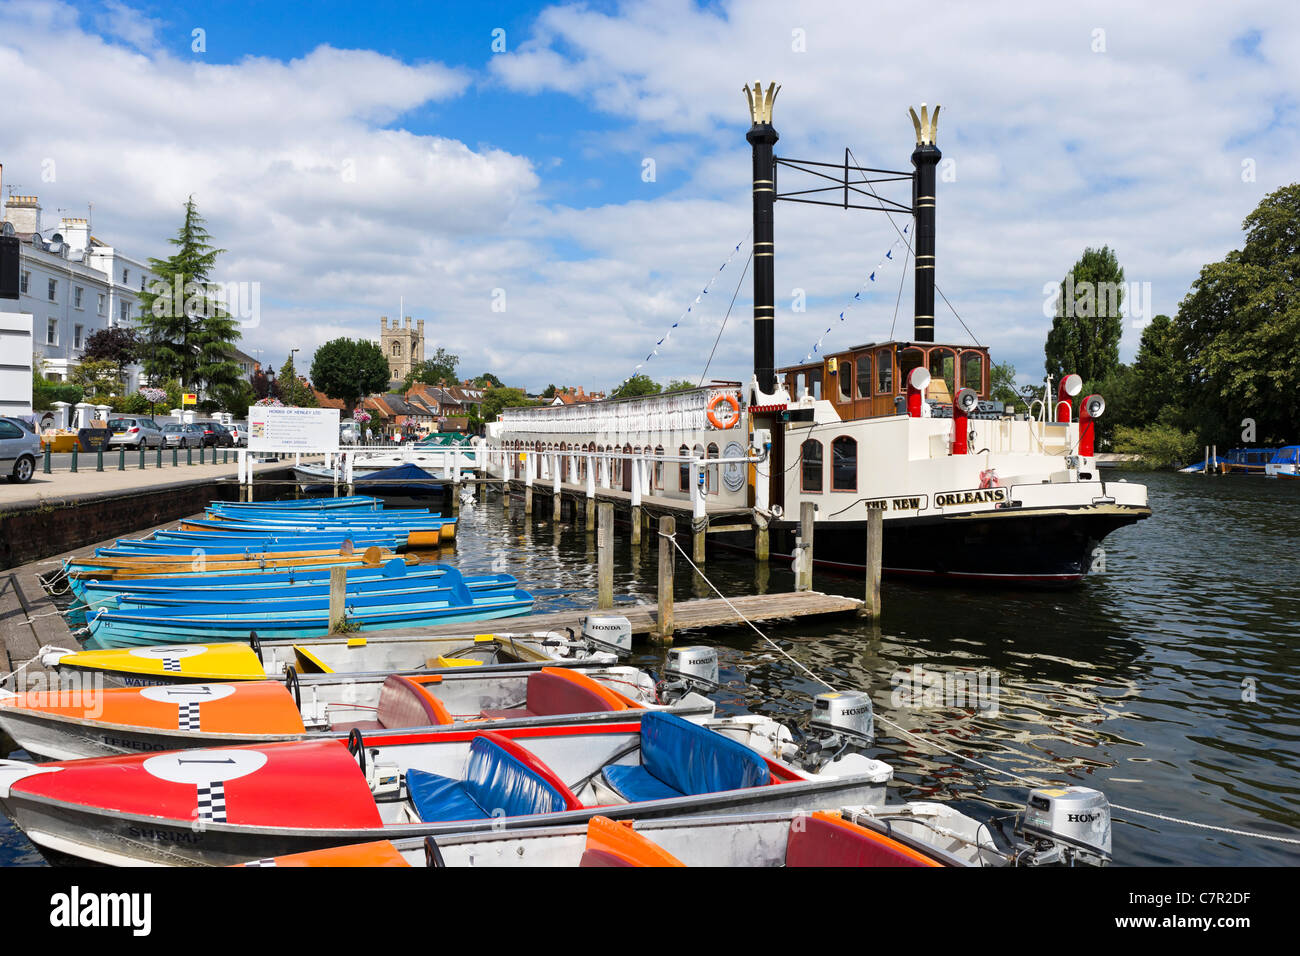 Der Raddampfer "New Orleans" und Boote zum mieten auf der Themse bei Henley-on-Thames, Oxfordshire, England, UK Stockfoto